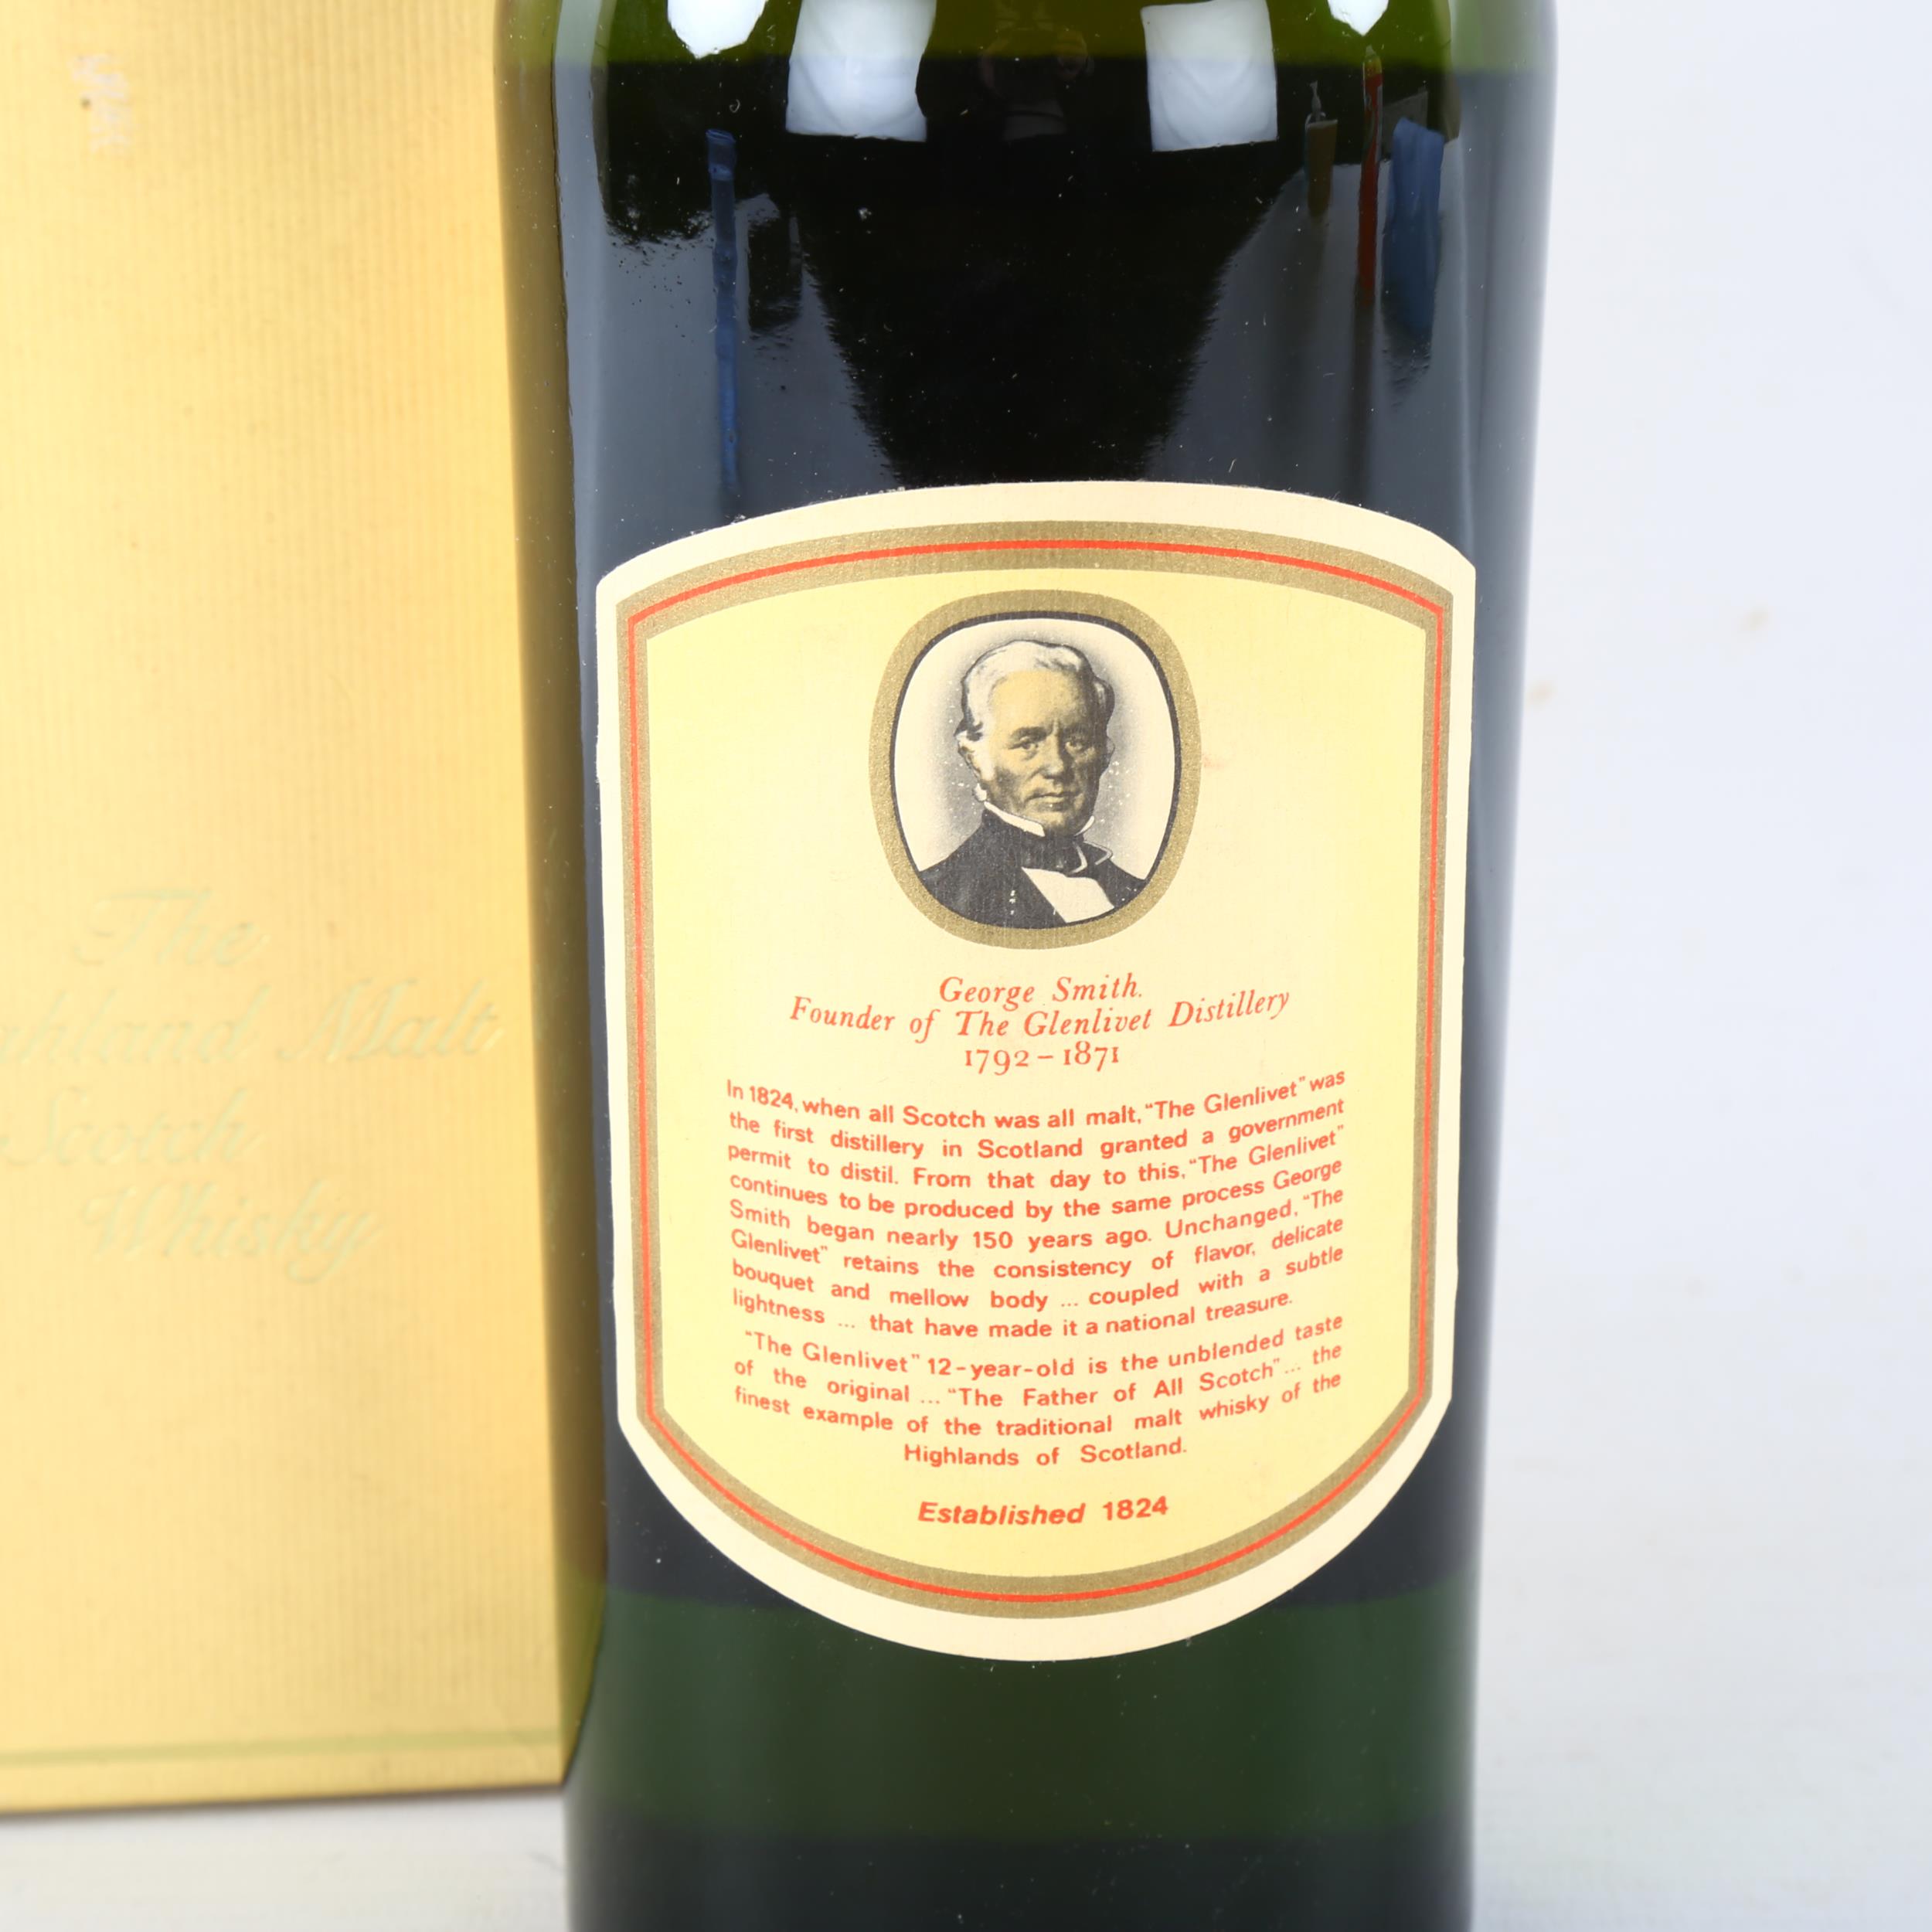 A vintage bottle of The Glenlivet 12 year old single malt whisky, 26 2/3 Fl oz, 70% proof Some - Image 3 of 3